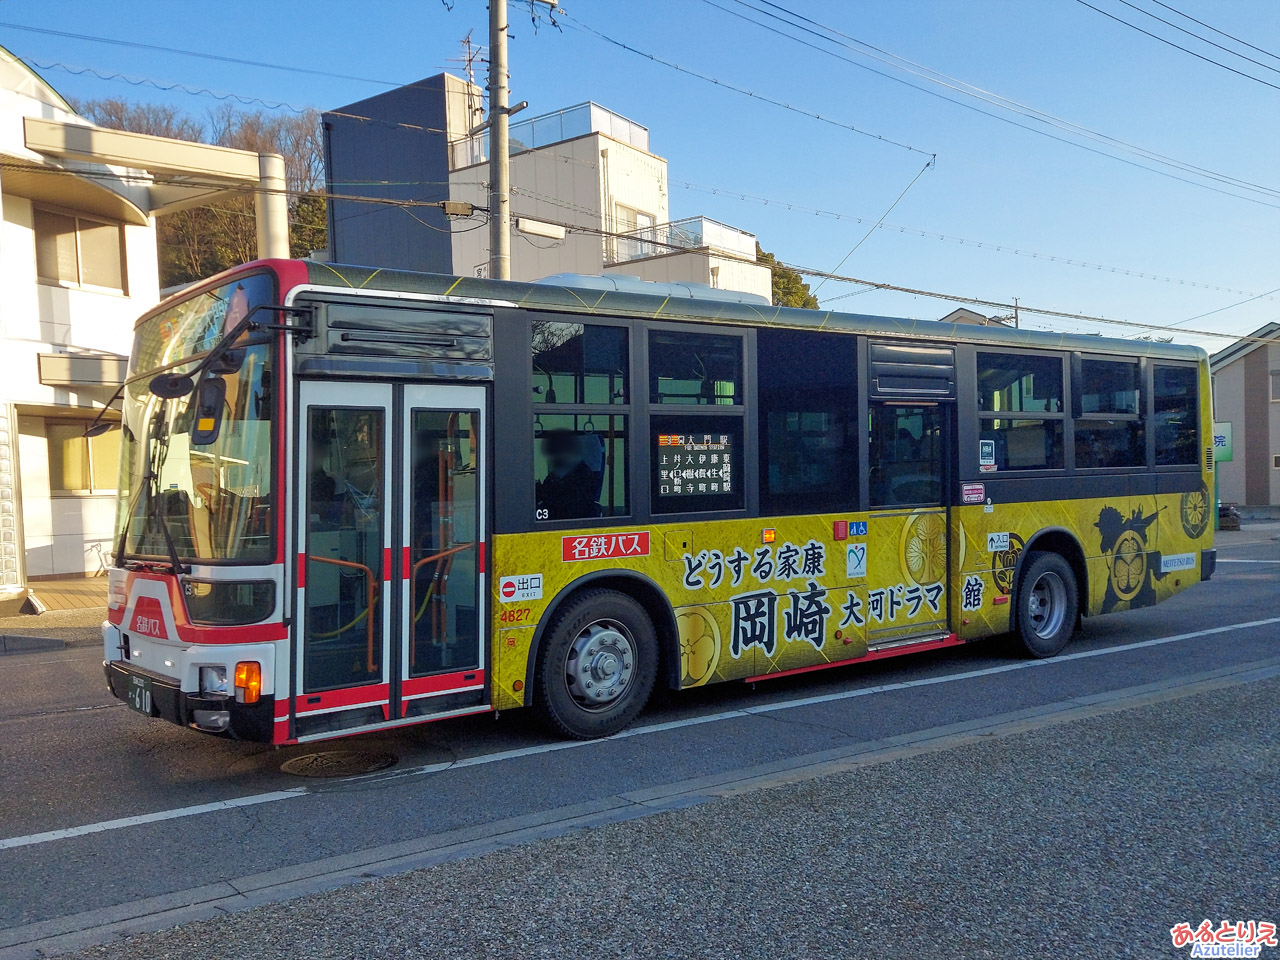 「どうする家康 岡崎 大河ドラマ館」PRデザインのラッピングバス